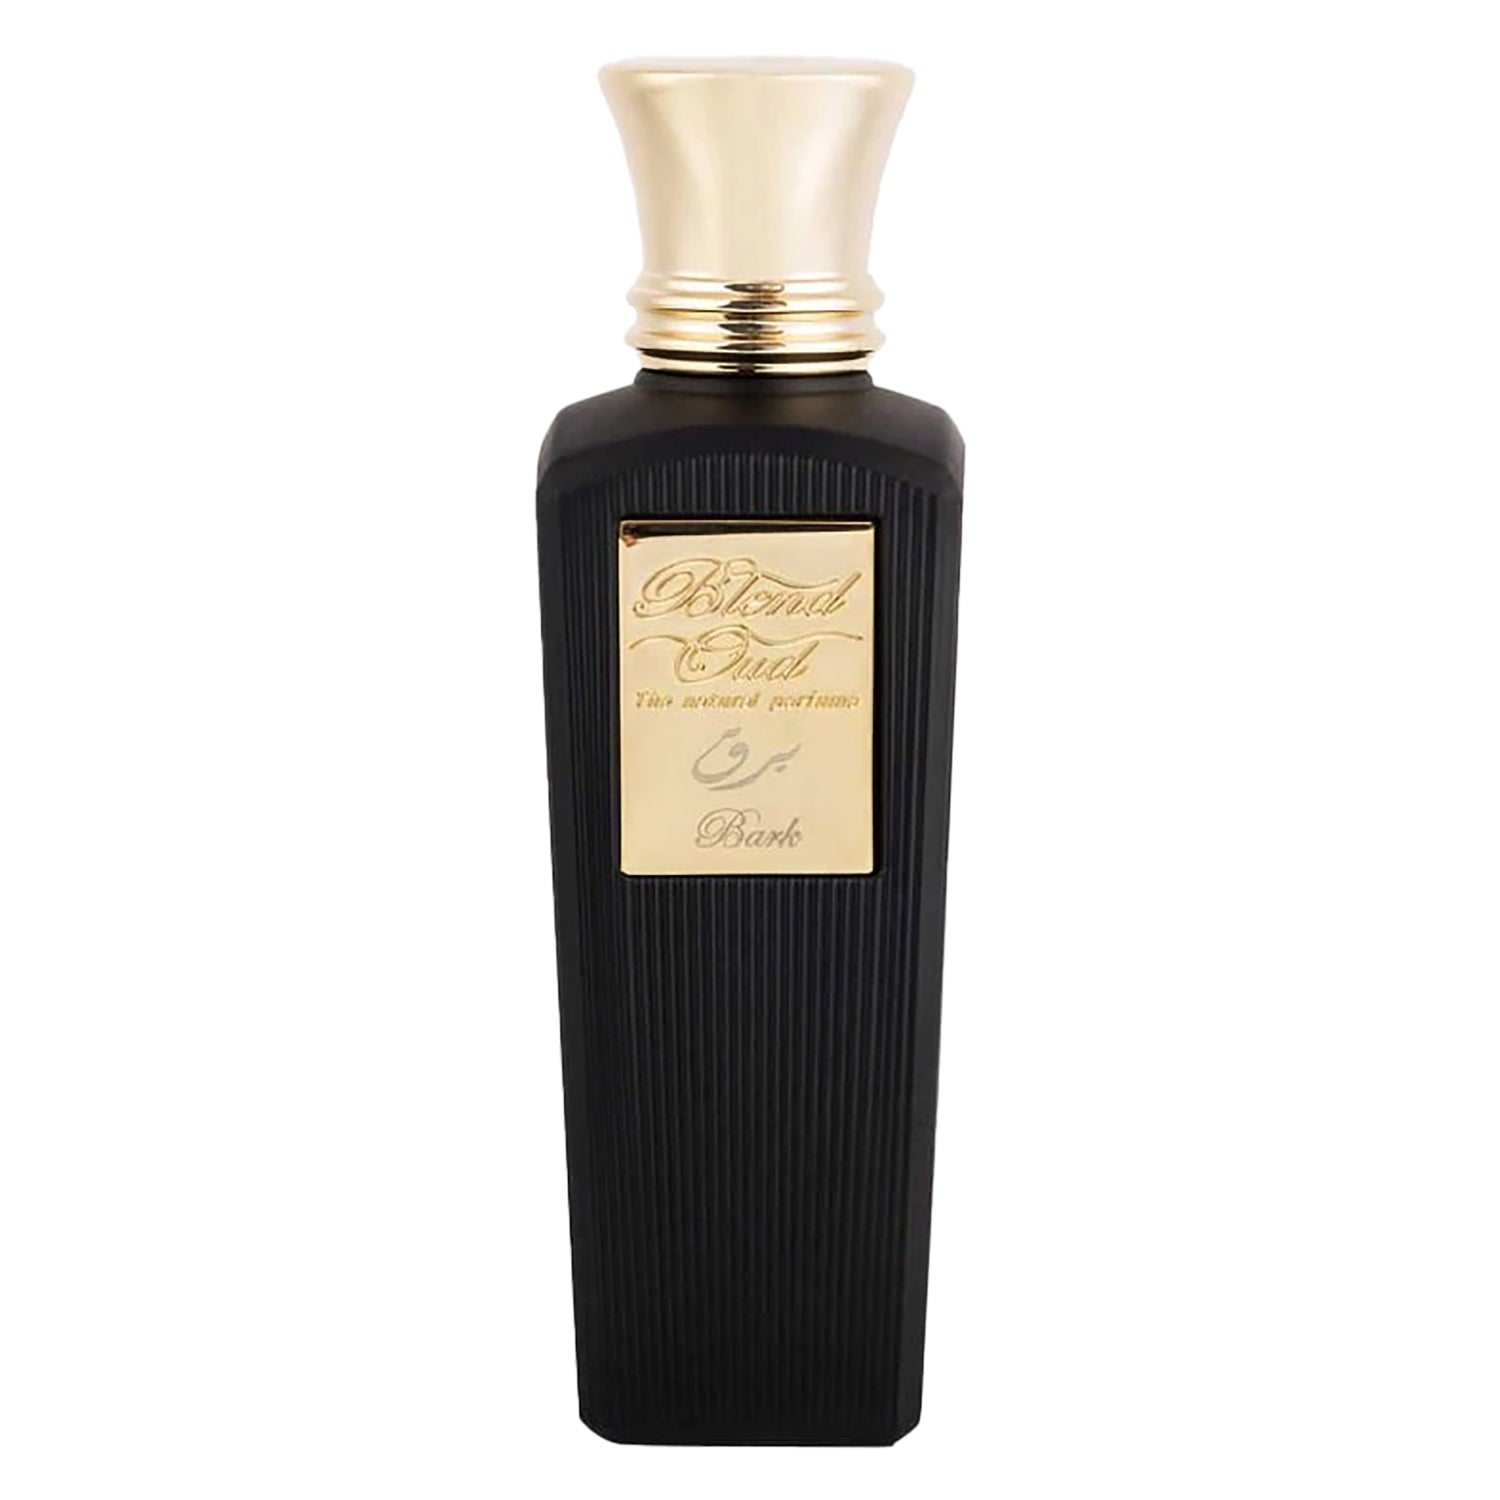 Blend Oud Natural Perfume Bark Eau de Parfum – DecantX Perfume & Cologne Decant Fragrance Samples